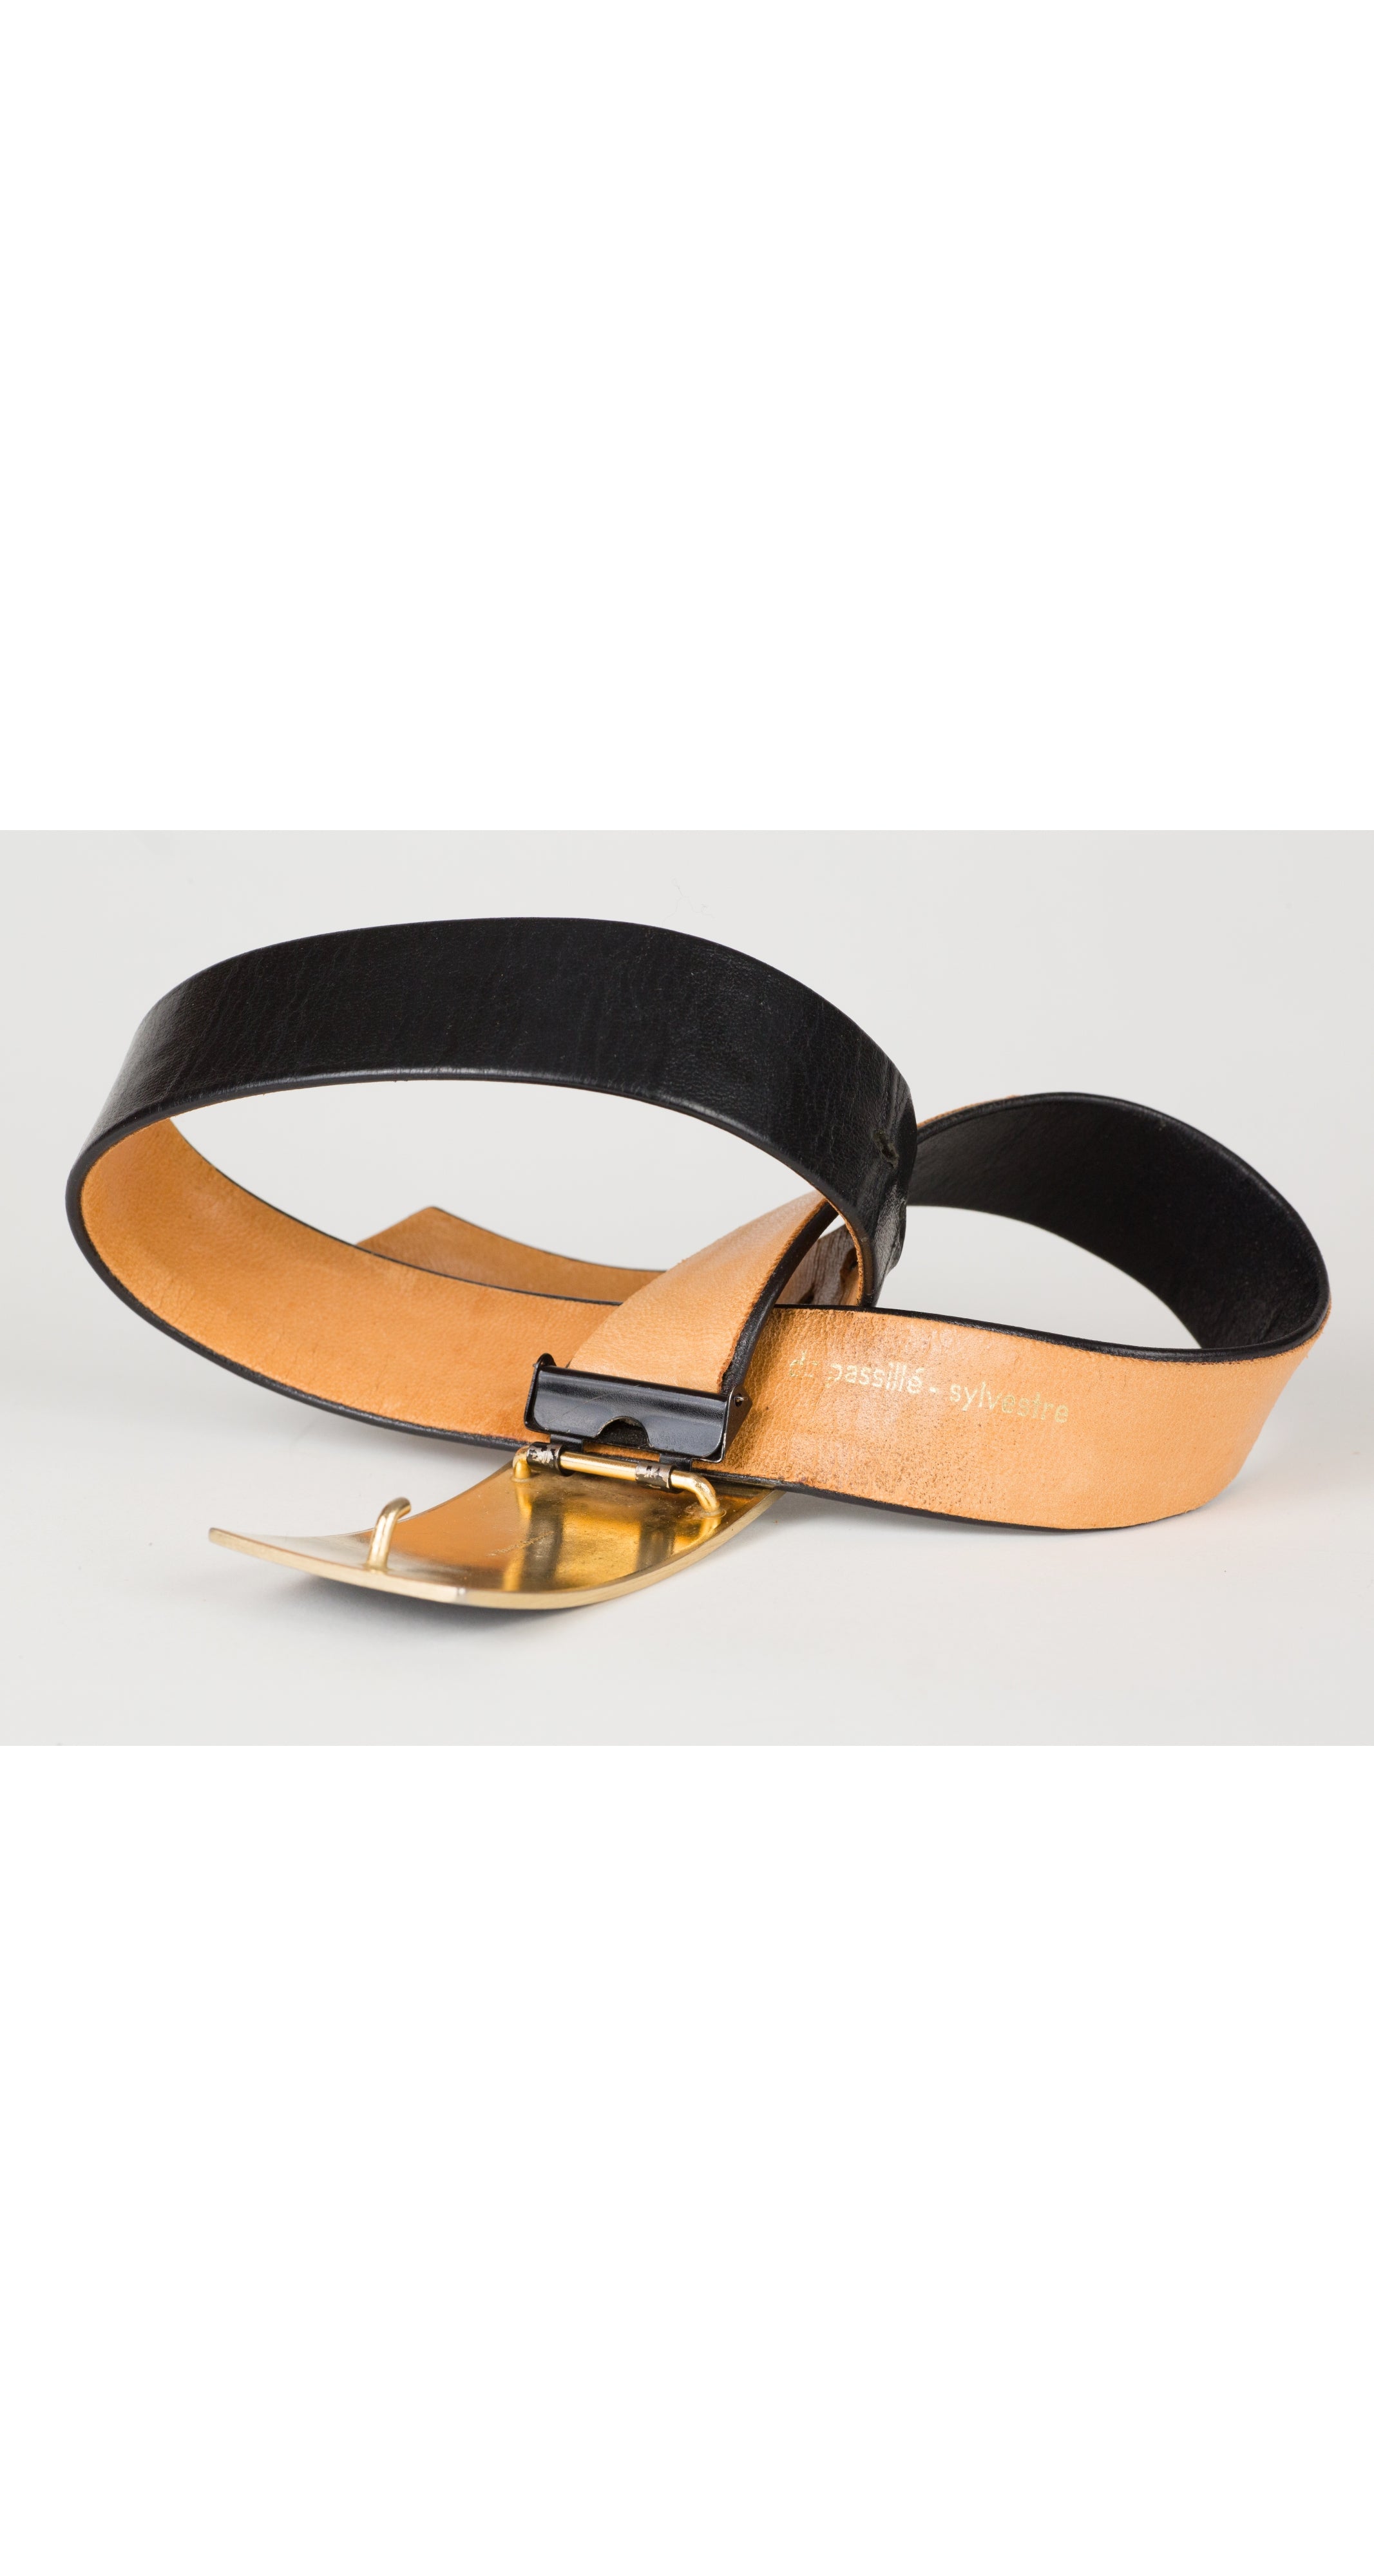 1970s Modernist Gold Buckle Black Leather Belt